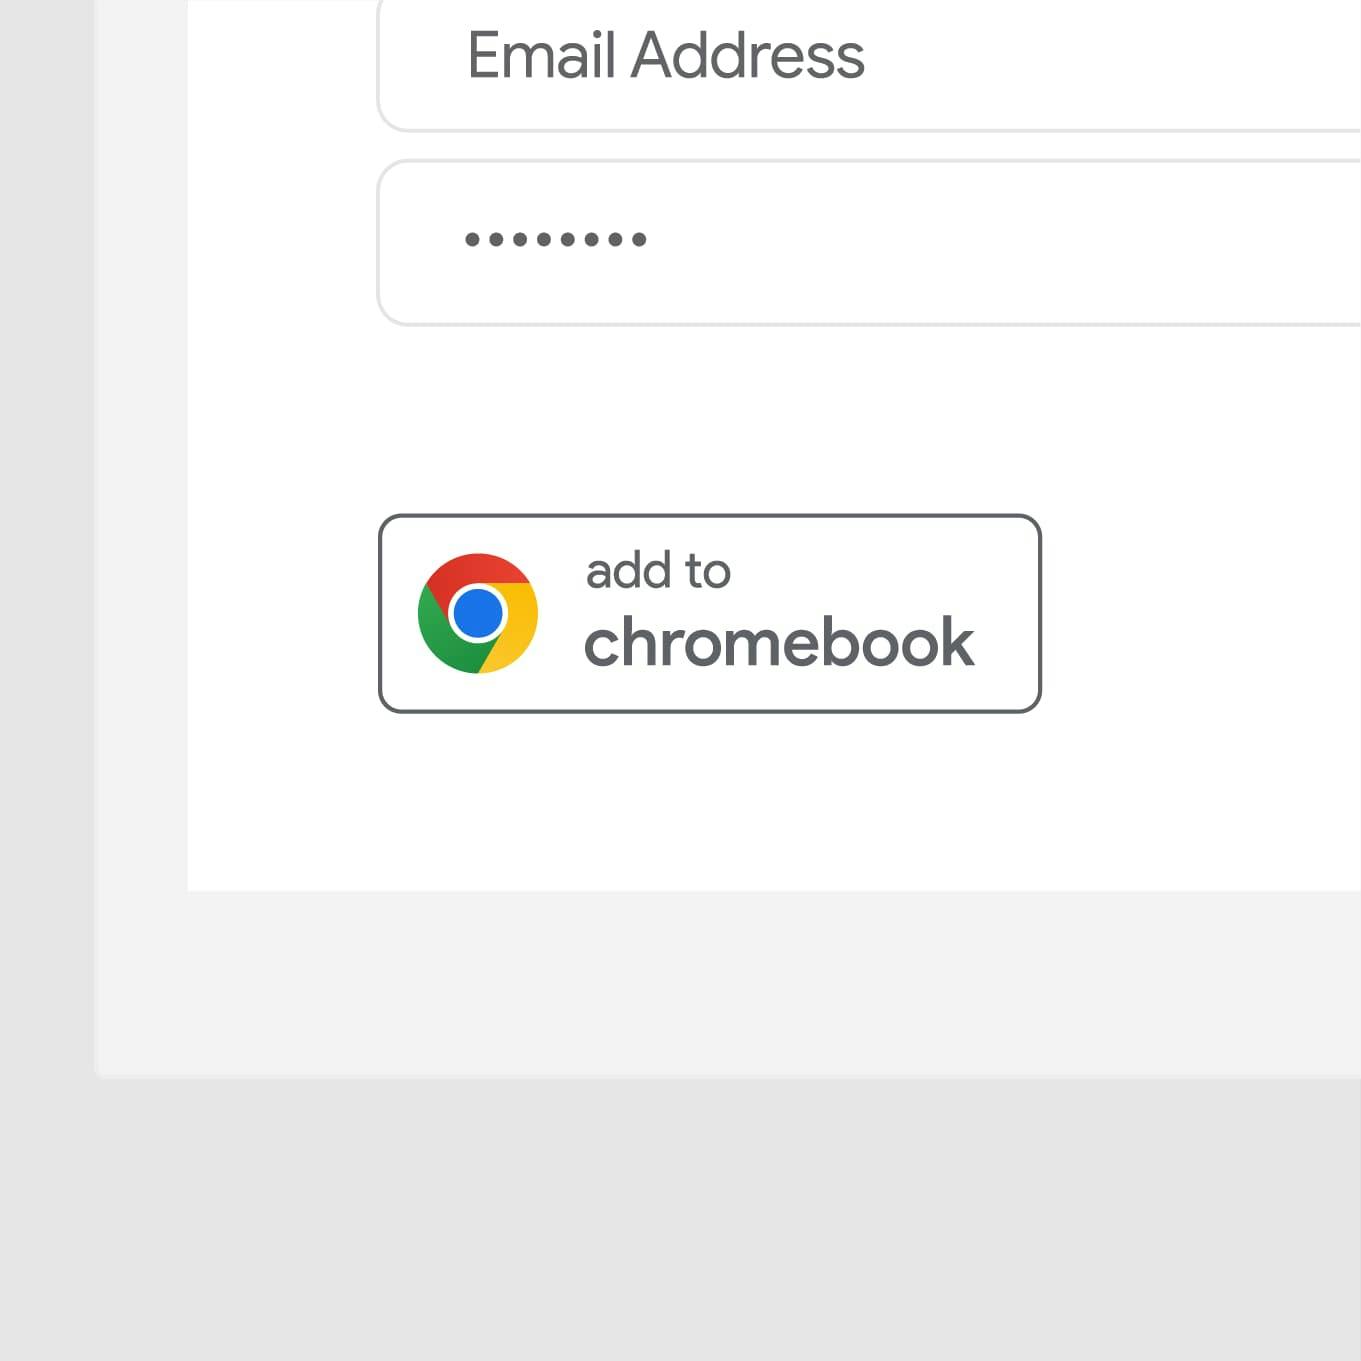 Add to Chromebook button in situ under a login form